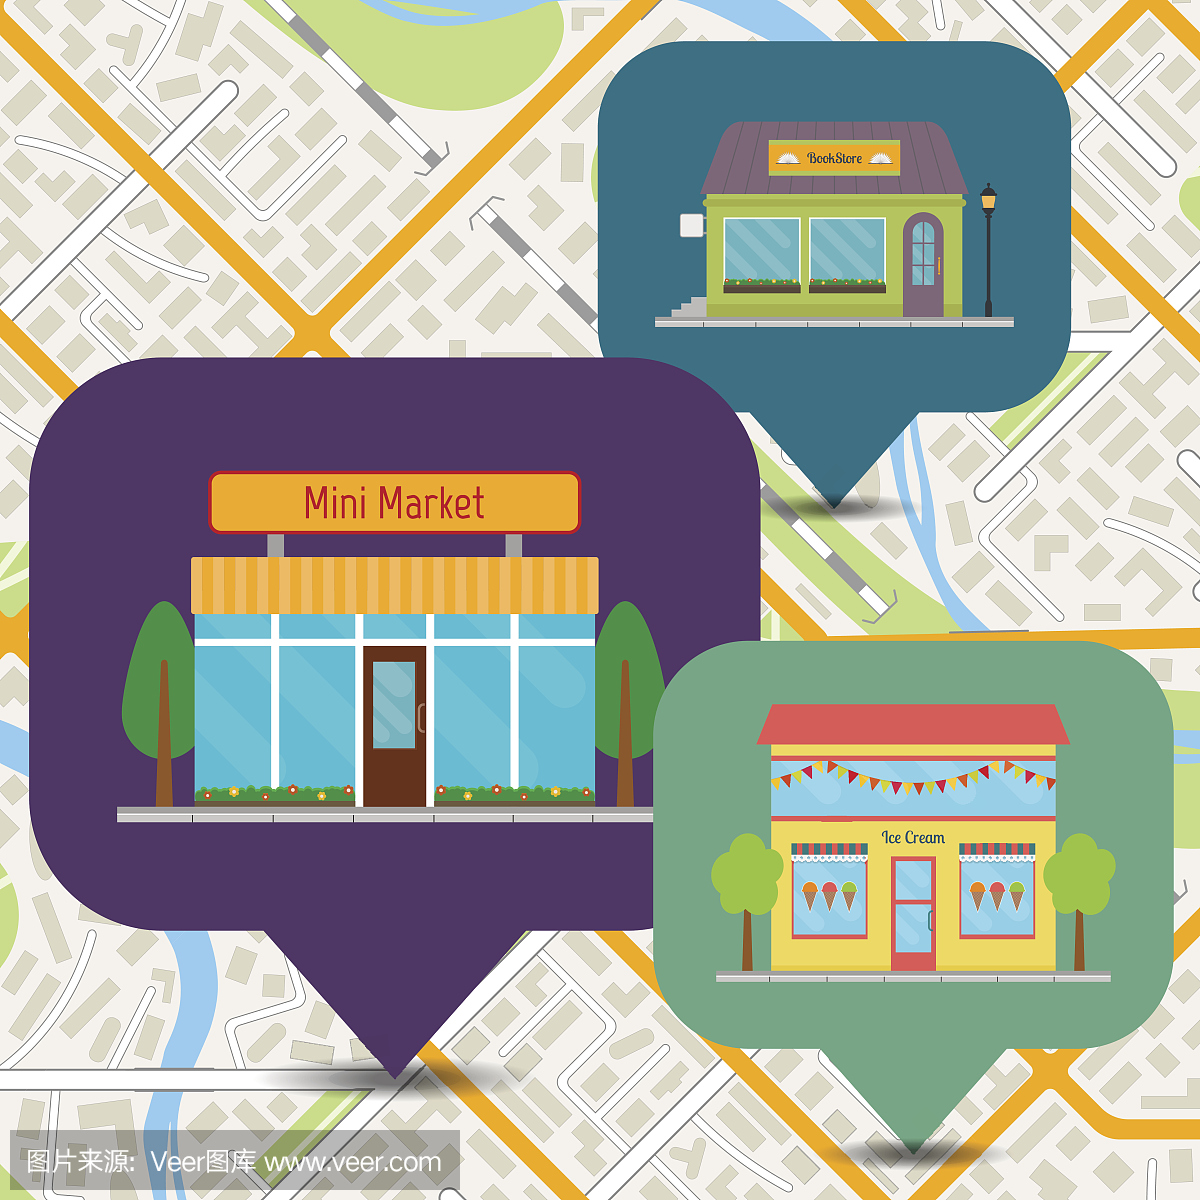 书店,冰淇淋店和城市地图上的迷你市场图标。